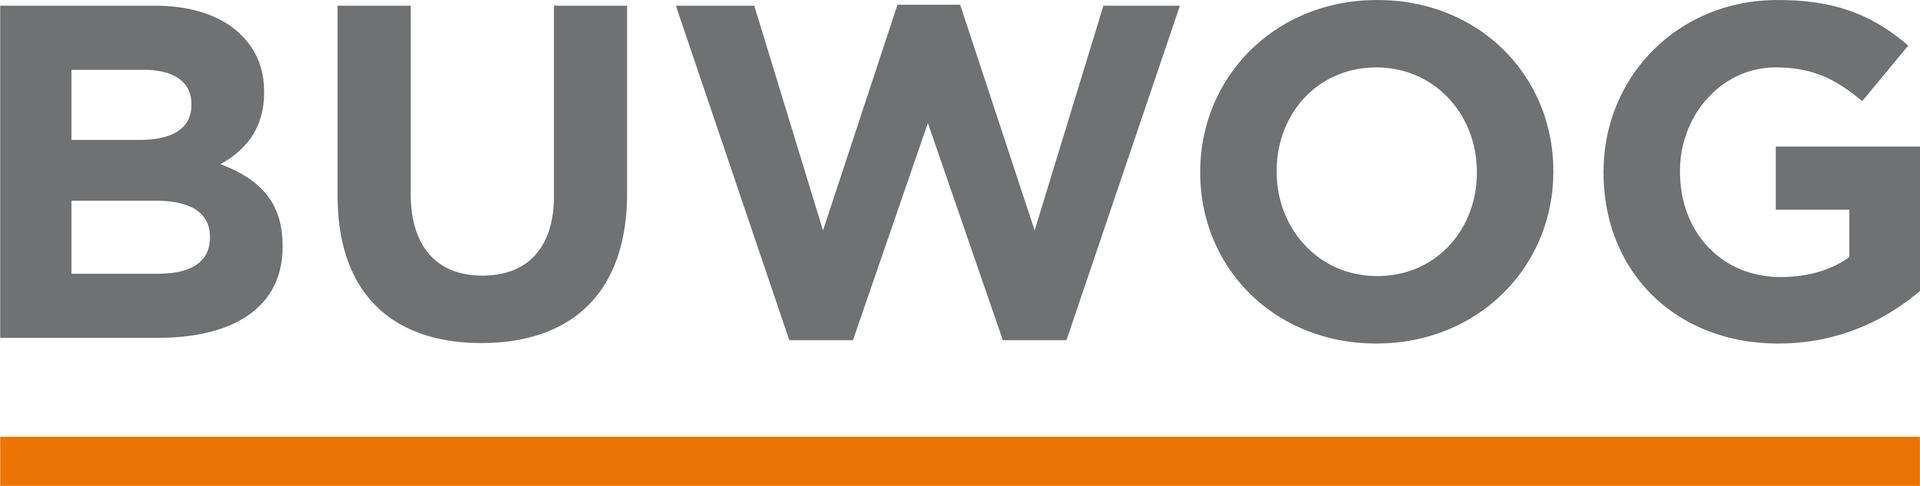 Makler BUWOG Süd GmbH logo